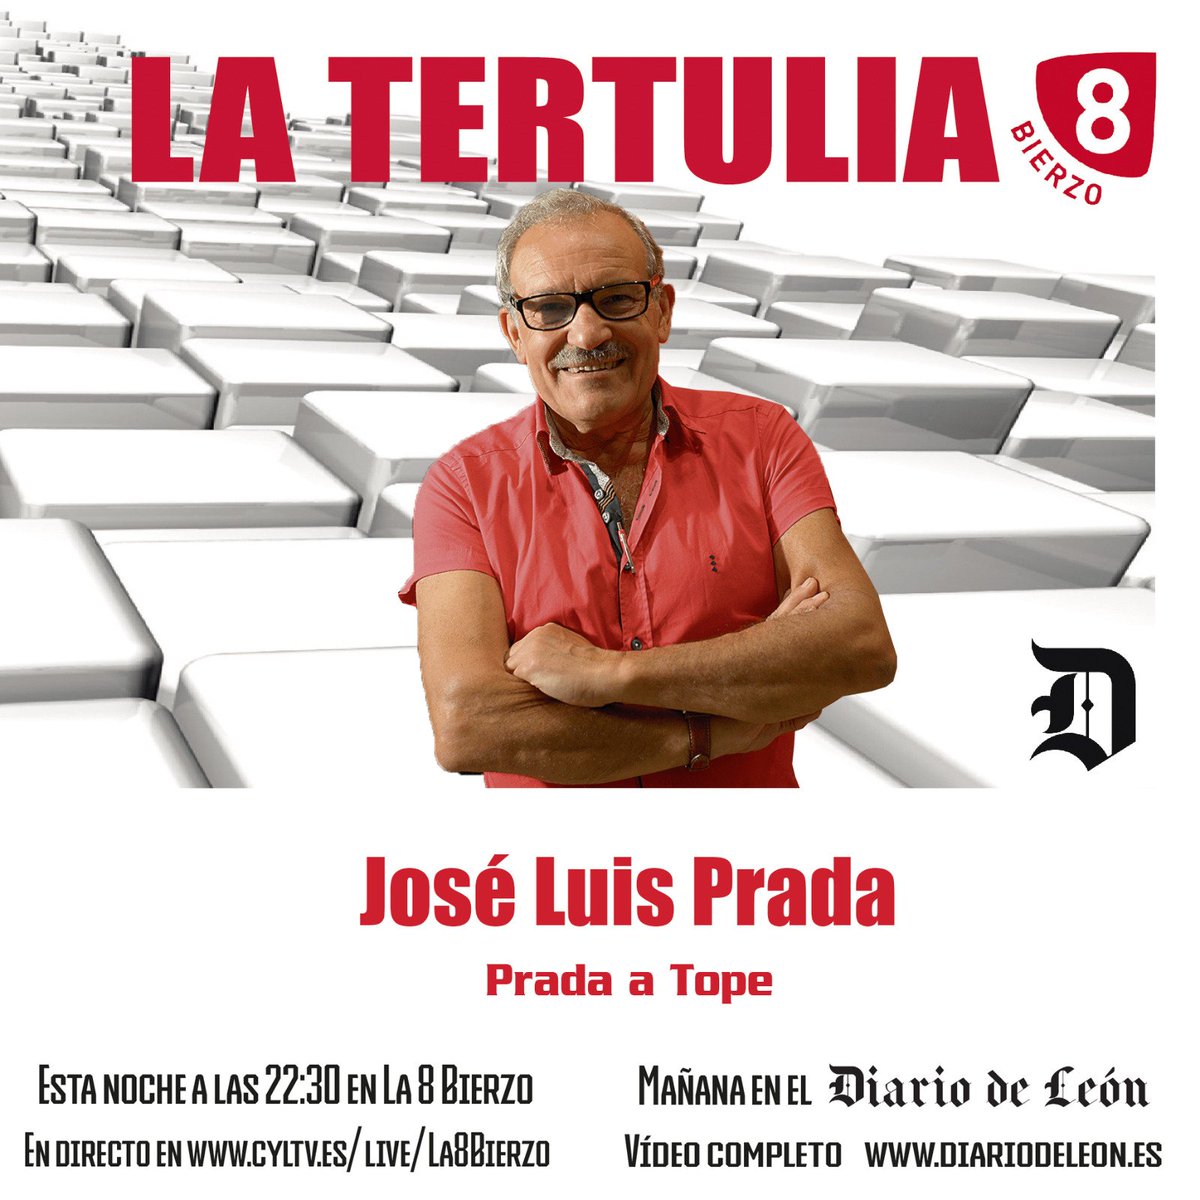 🖥#LaTertulia

🗓 Hoy lunes 11 de diciembre

🕥 22:30h

👉 José Luis Prada, Prada a Tope

📎 Hoy, en colaboración con @diariodeleon, entrevistamos a José Luis Prada @PRADAATOPE, para hablar de la situación económica y social de la comarca.